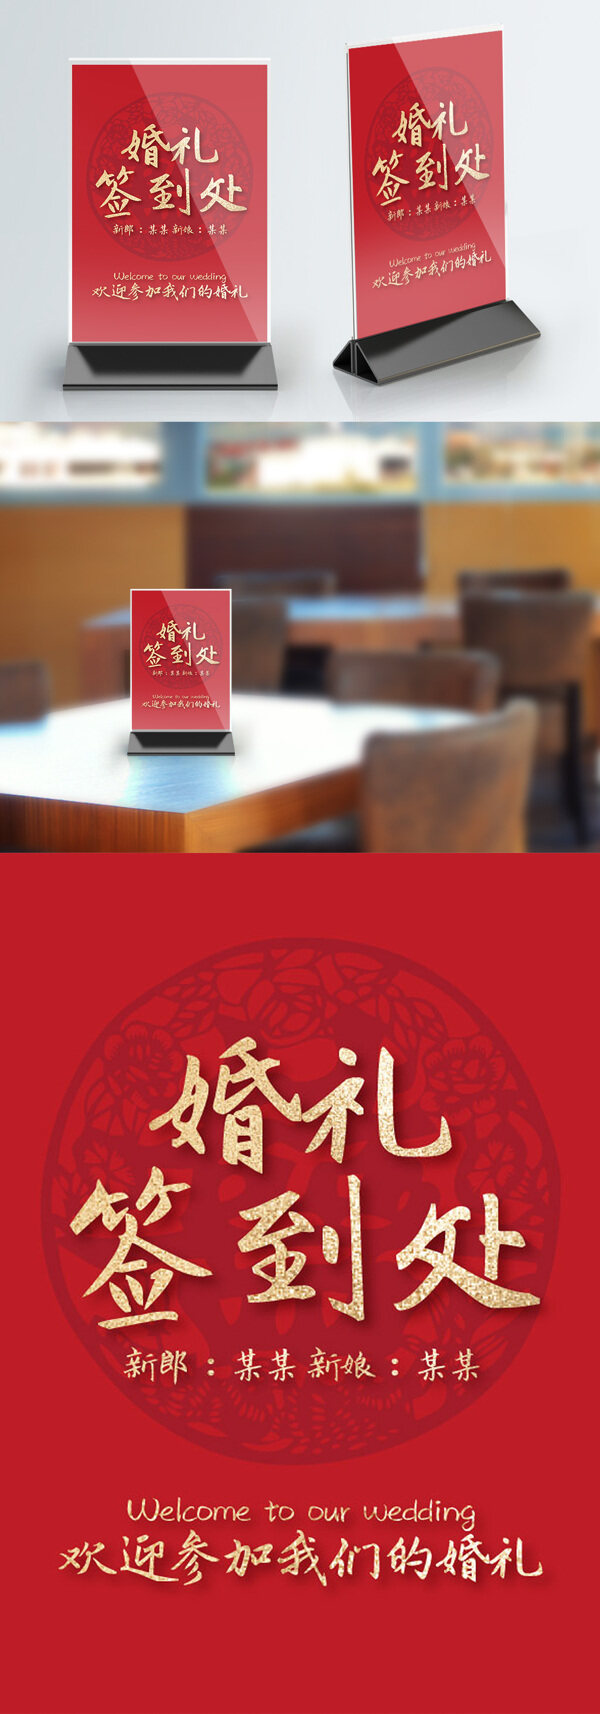 婚礼签到红色底纹中国风桌卡台卡桌牌设计